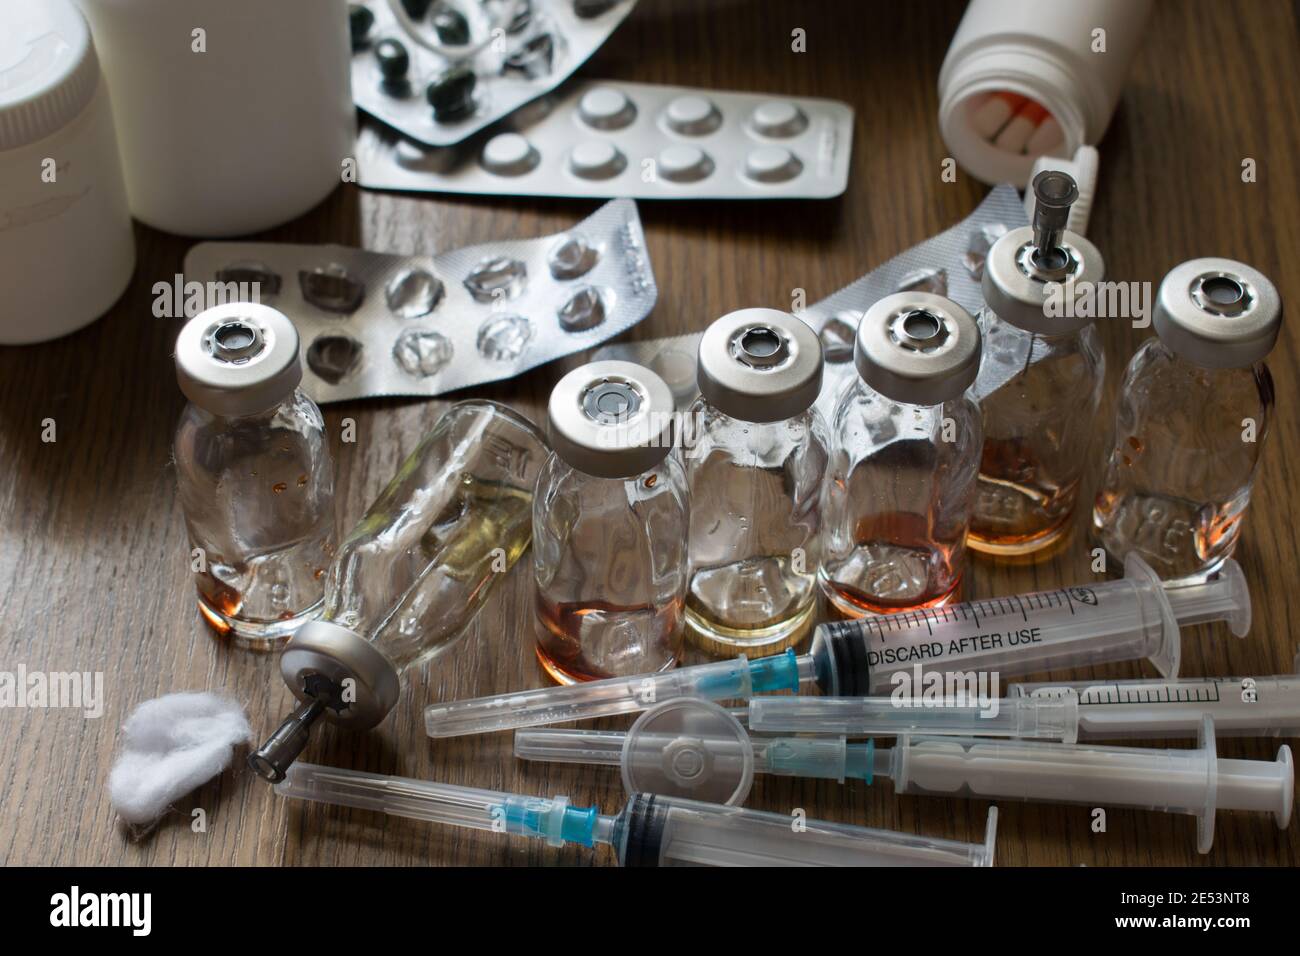 Jeringas con agujas comprimidos y medicamentos para inyecciones Foto de stock